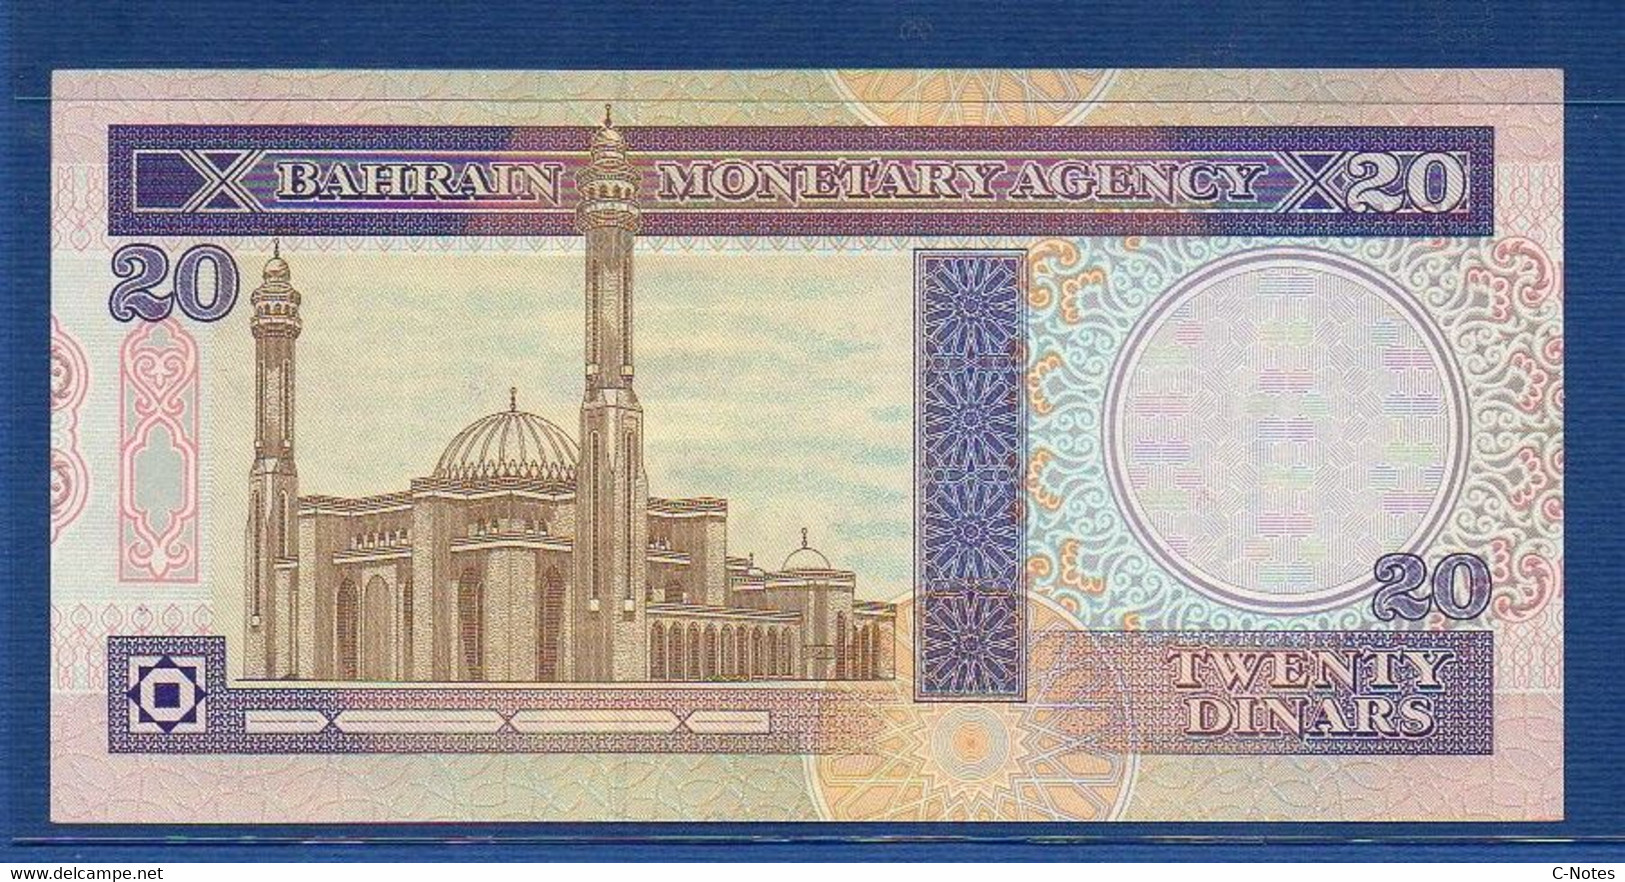 BAHRAIN - P.16x - 20 Dinars  L.1973 (1993) UNC Serie 575979 - Bahreïn